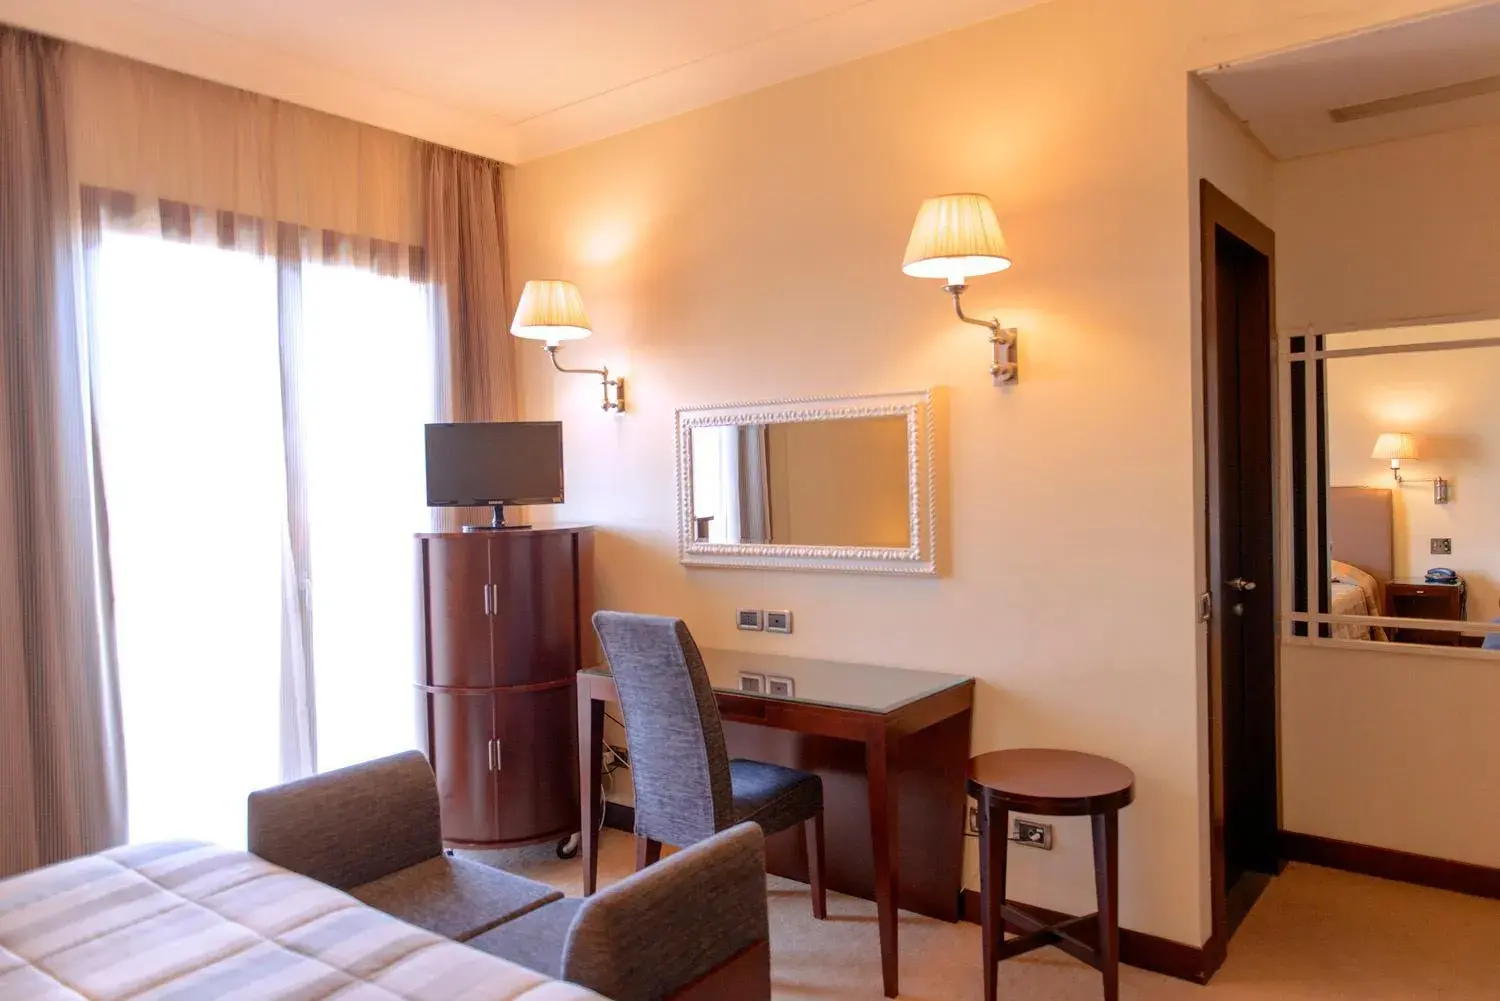 Bedroom, TV/Entertainment Center in Hotel Cala Del Porto